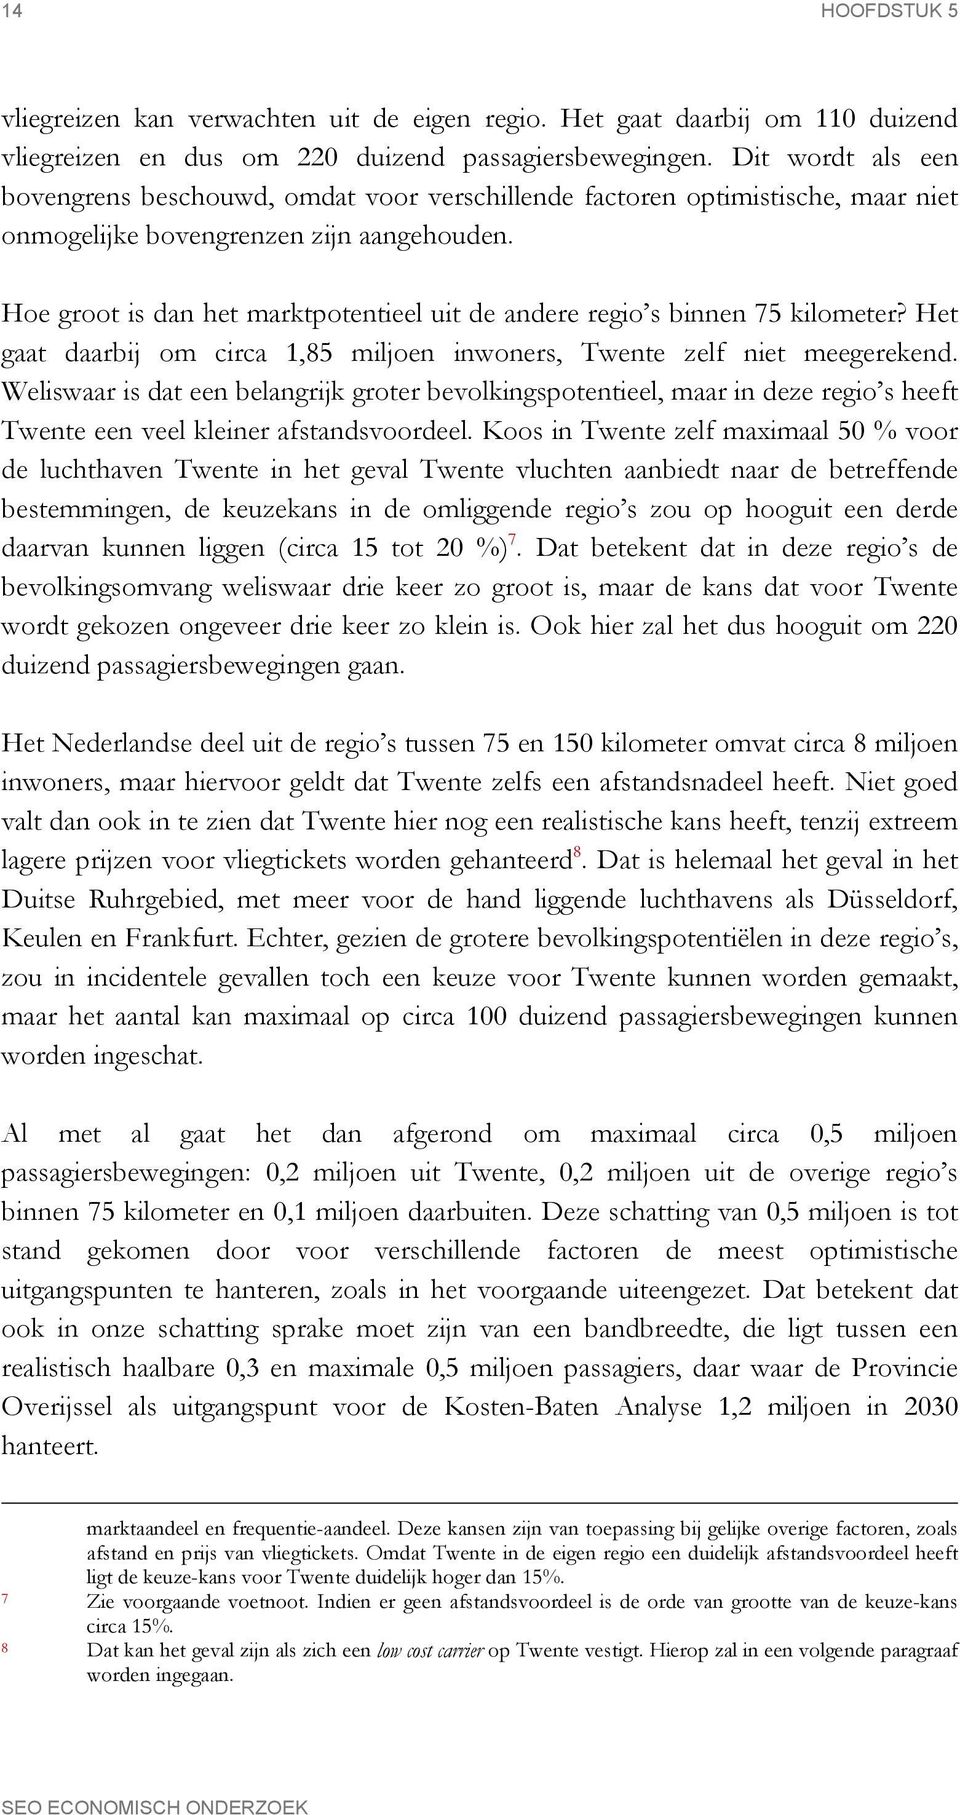 Hoe groot is dan het marktpotentieel uit de andere regio s binnen 75 kilometer? Het gaat daarbij om circa 1,85 miljoen inwoners, Twente zelf niet meegerekend.